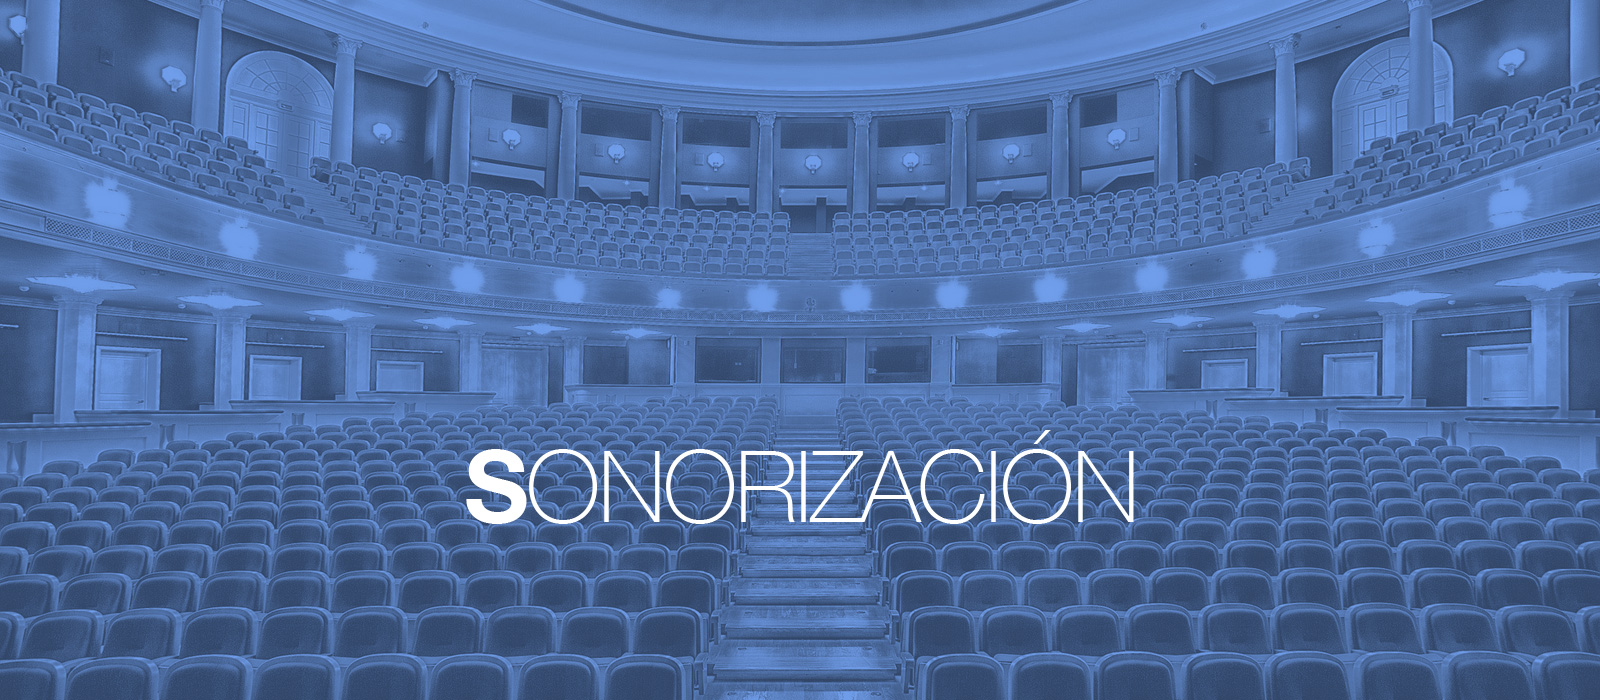 Sonorización Madrid. OmDigital Soluciones Audiovisuales.